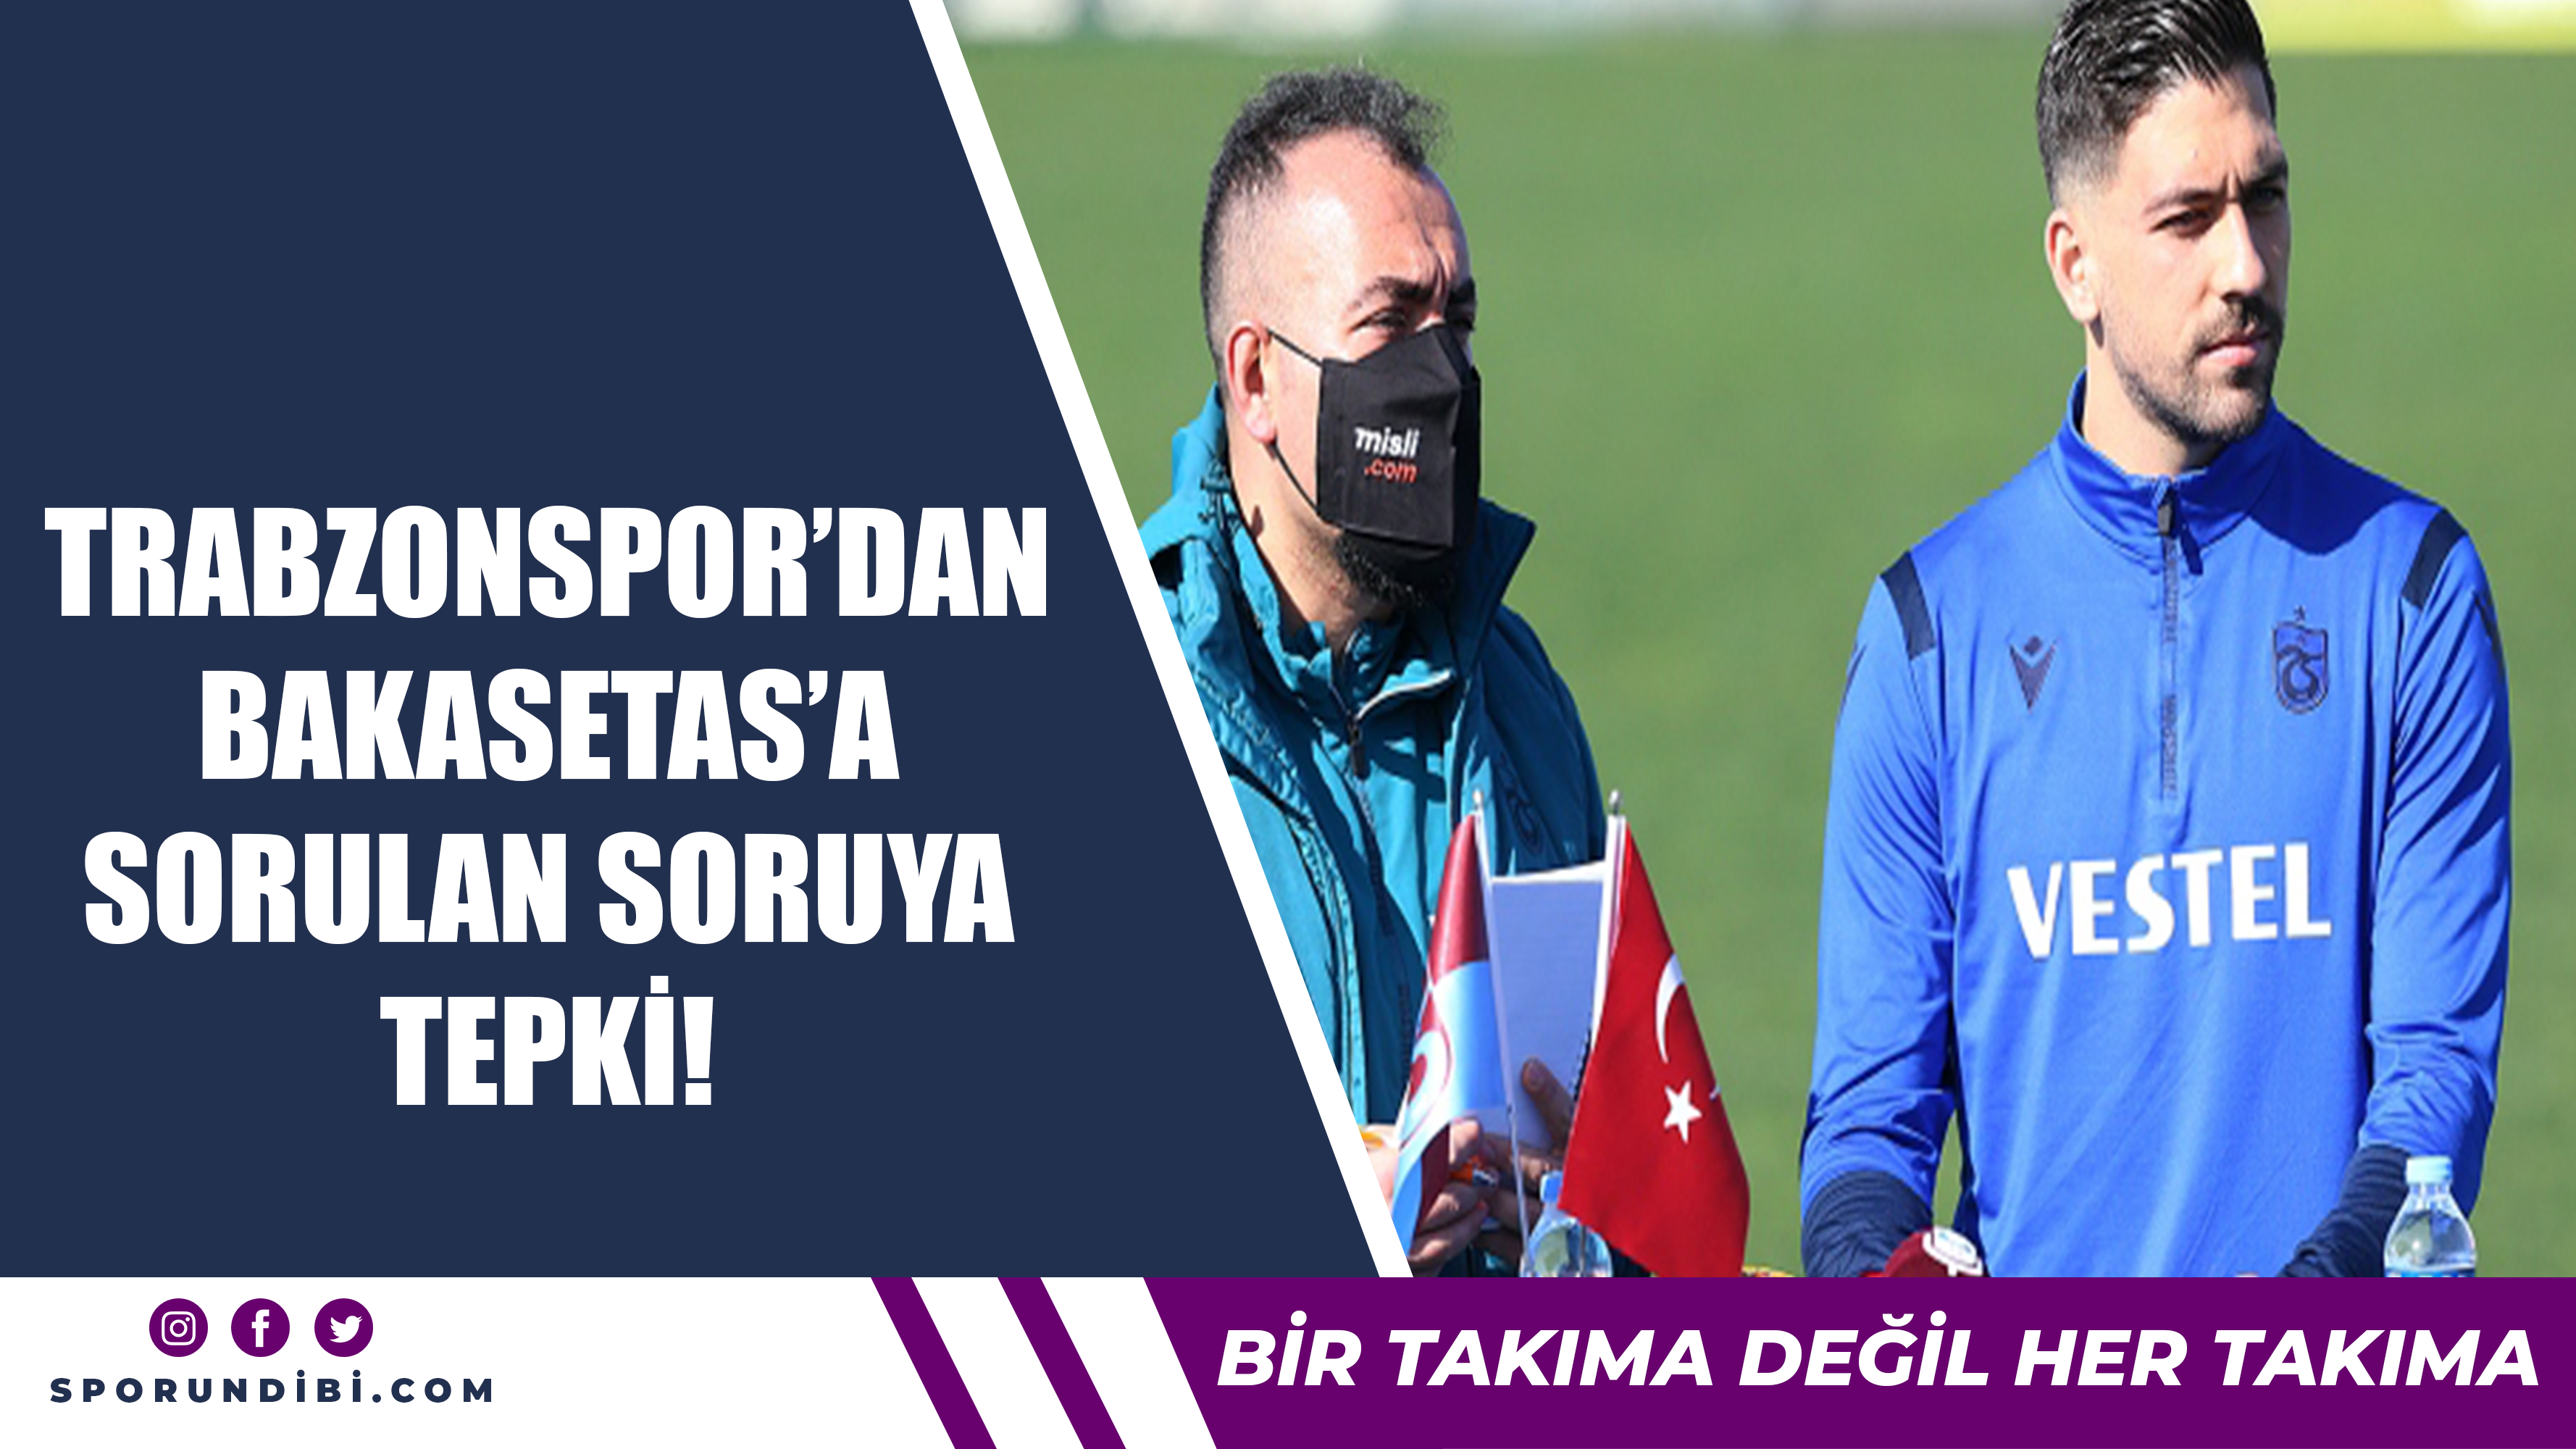 Trabzonspor'dan Bakasetas'a sorulan soruya tepki!